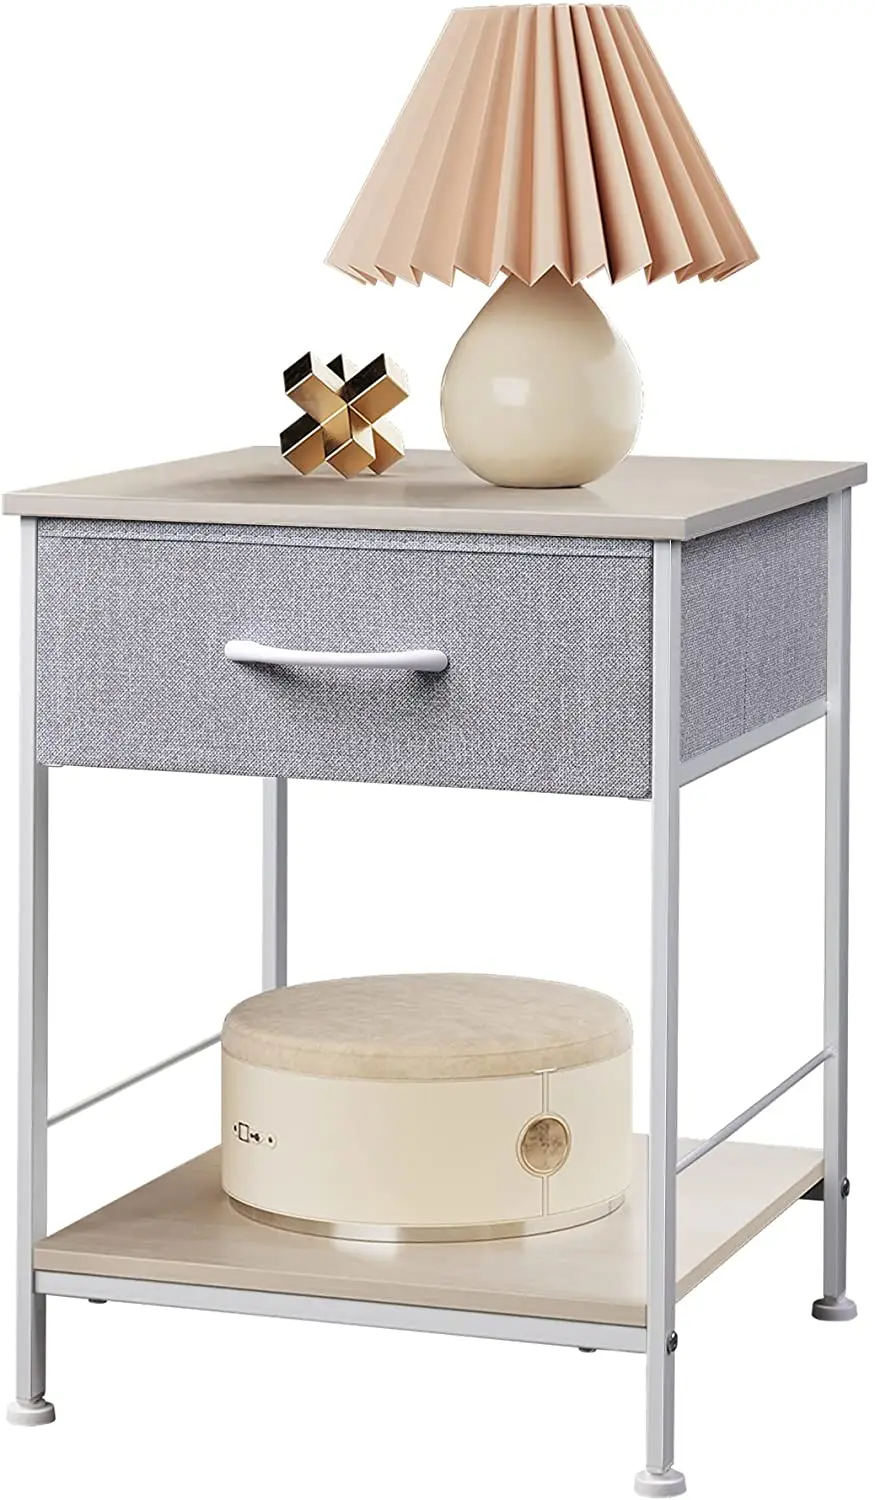 

31 тумбочка, прикроватный столик с ящиком для хранения ткани и открытой деревянной полкой, прикроватная мебель со стальной рамой